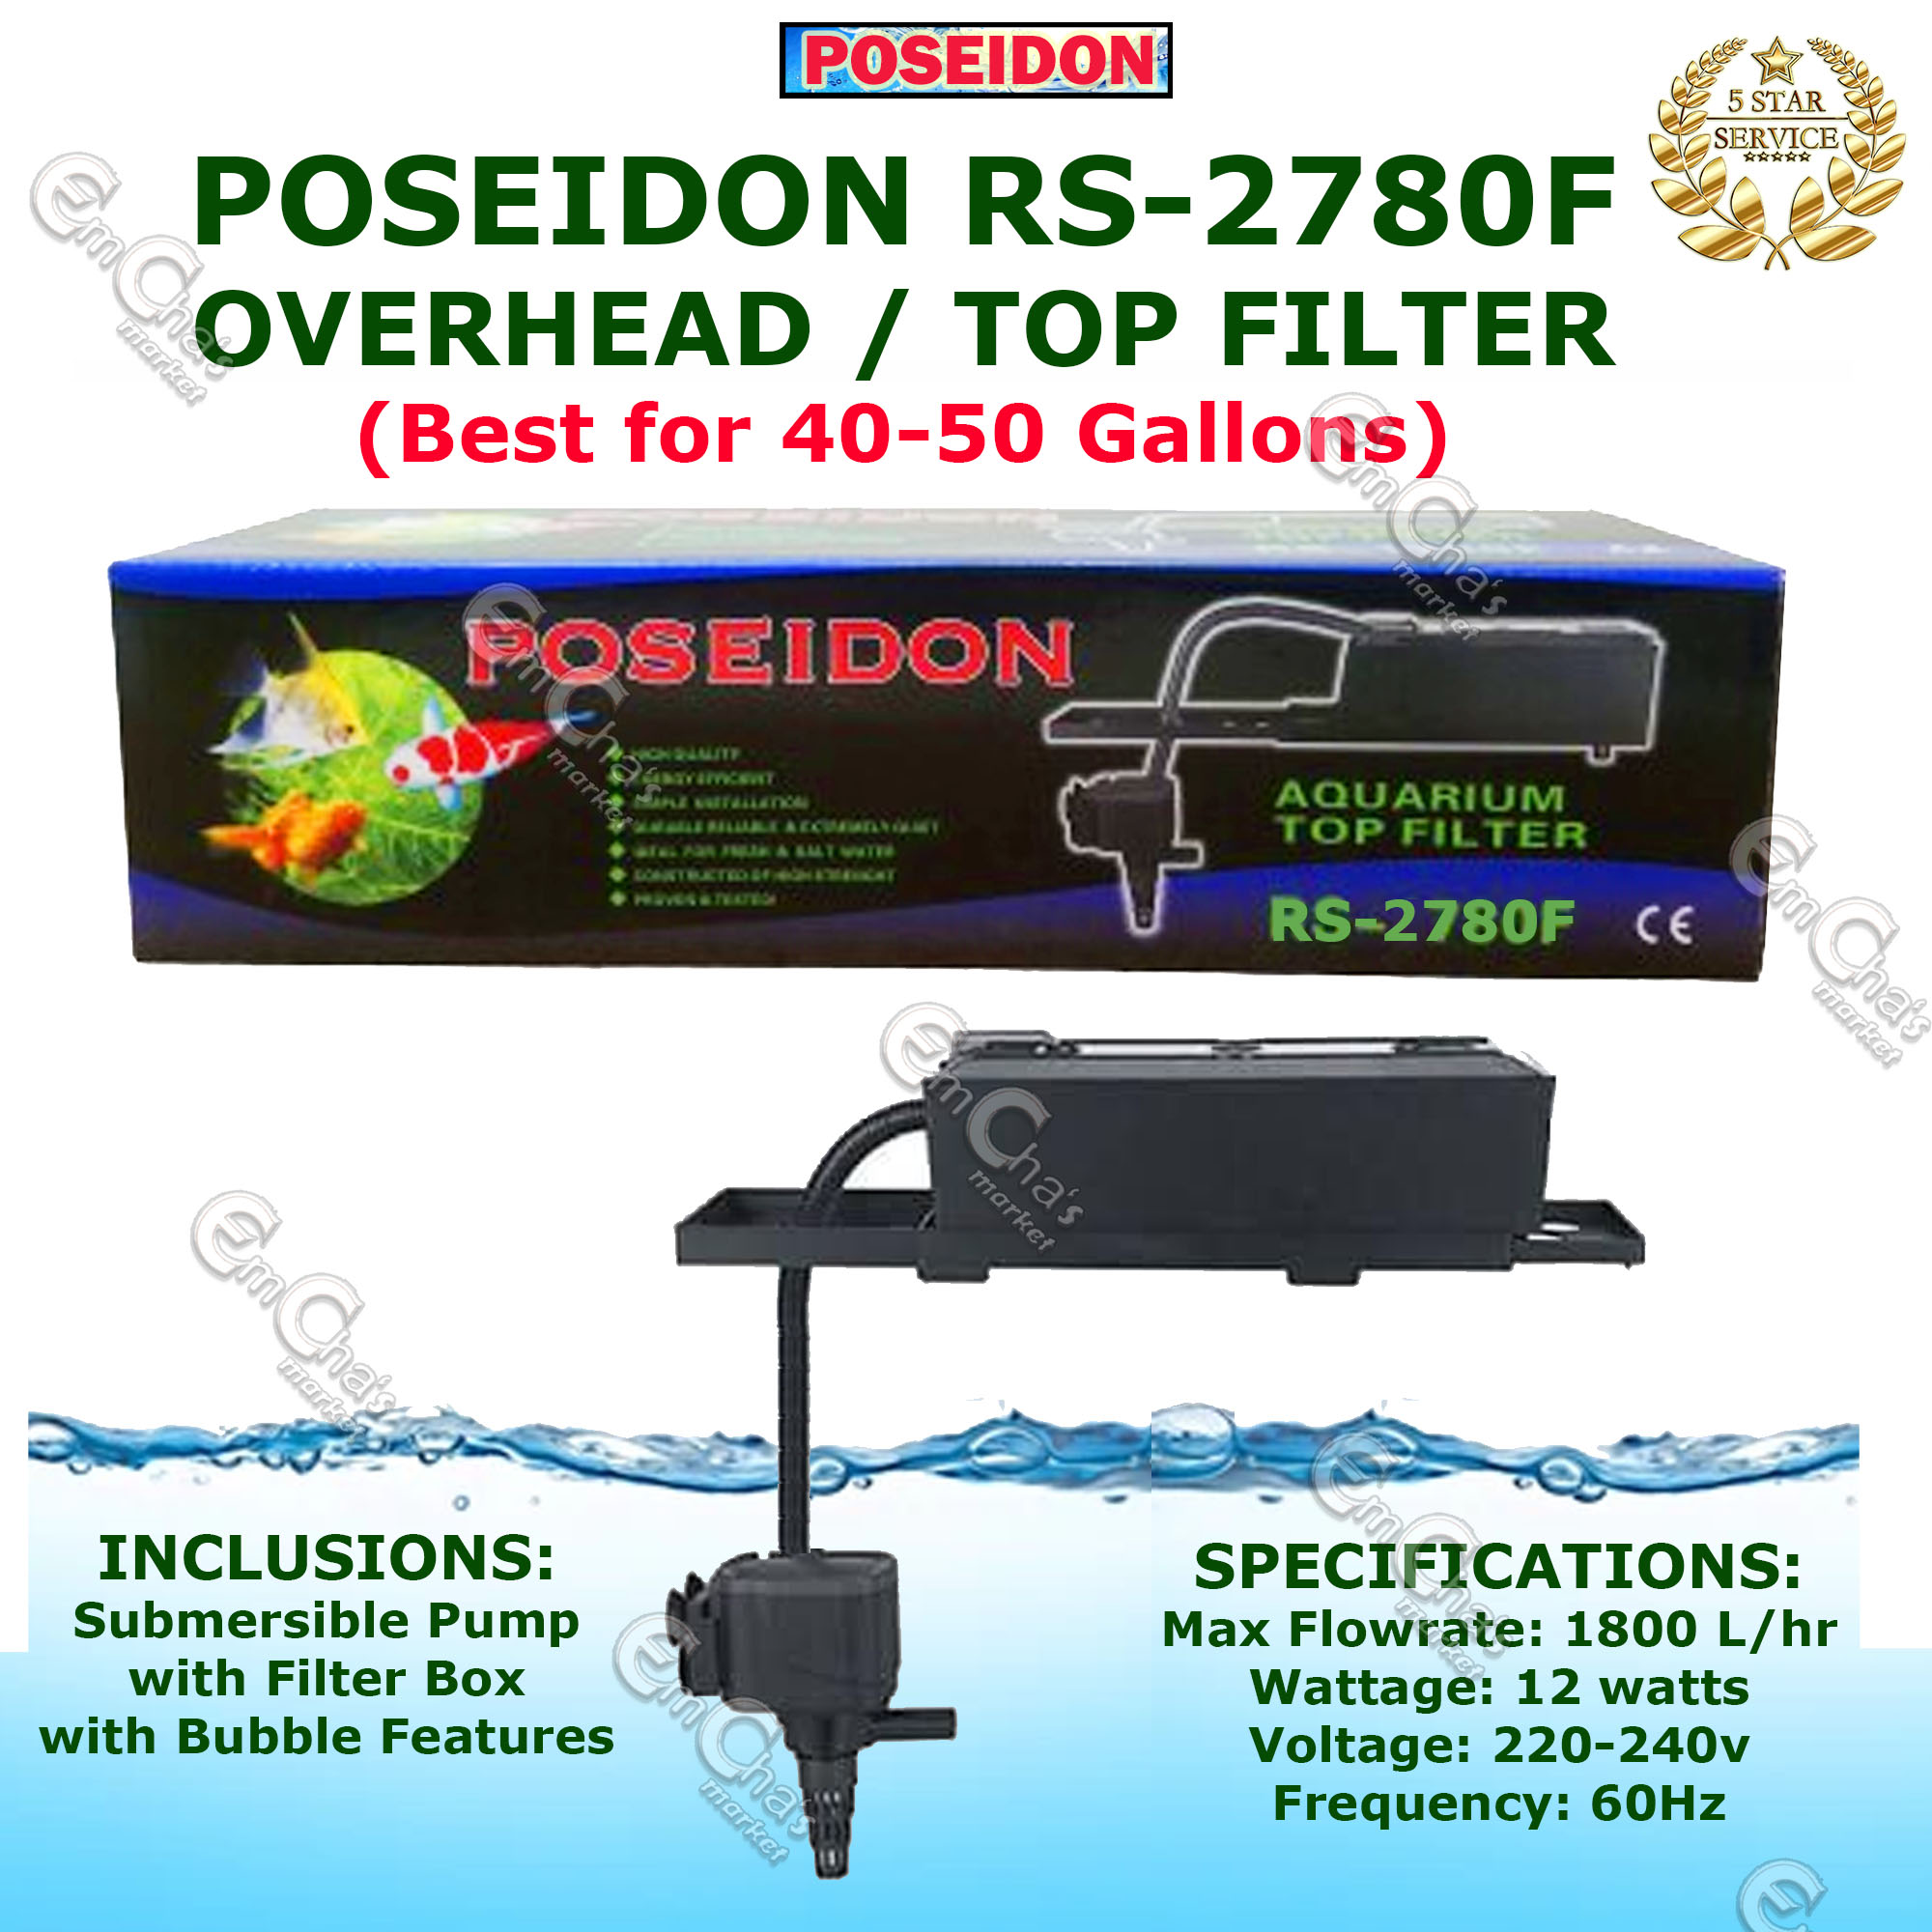 Artesano en lugar sorpresa Poseidon Top Filter RS-2780F 12watts (for 40-50 Gallons) (40gl) (50gl)  (tof) Submersible Pump Aquarium Pump Aquarium Accessories Overhead Pump |  Lazada PH